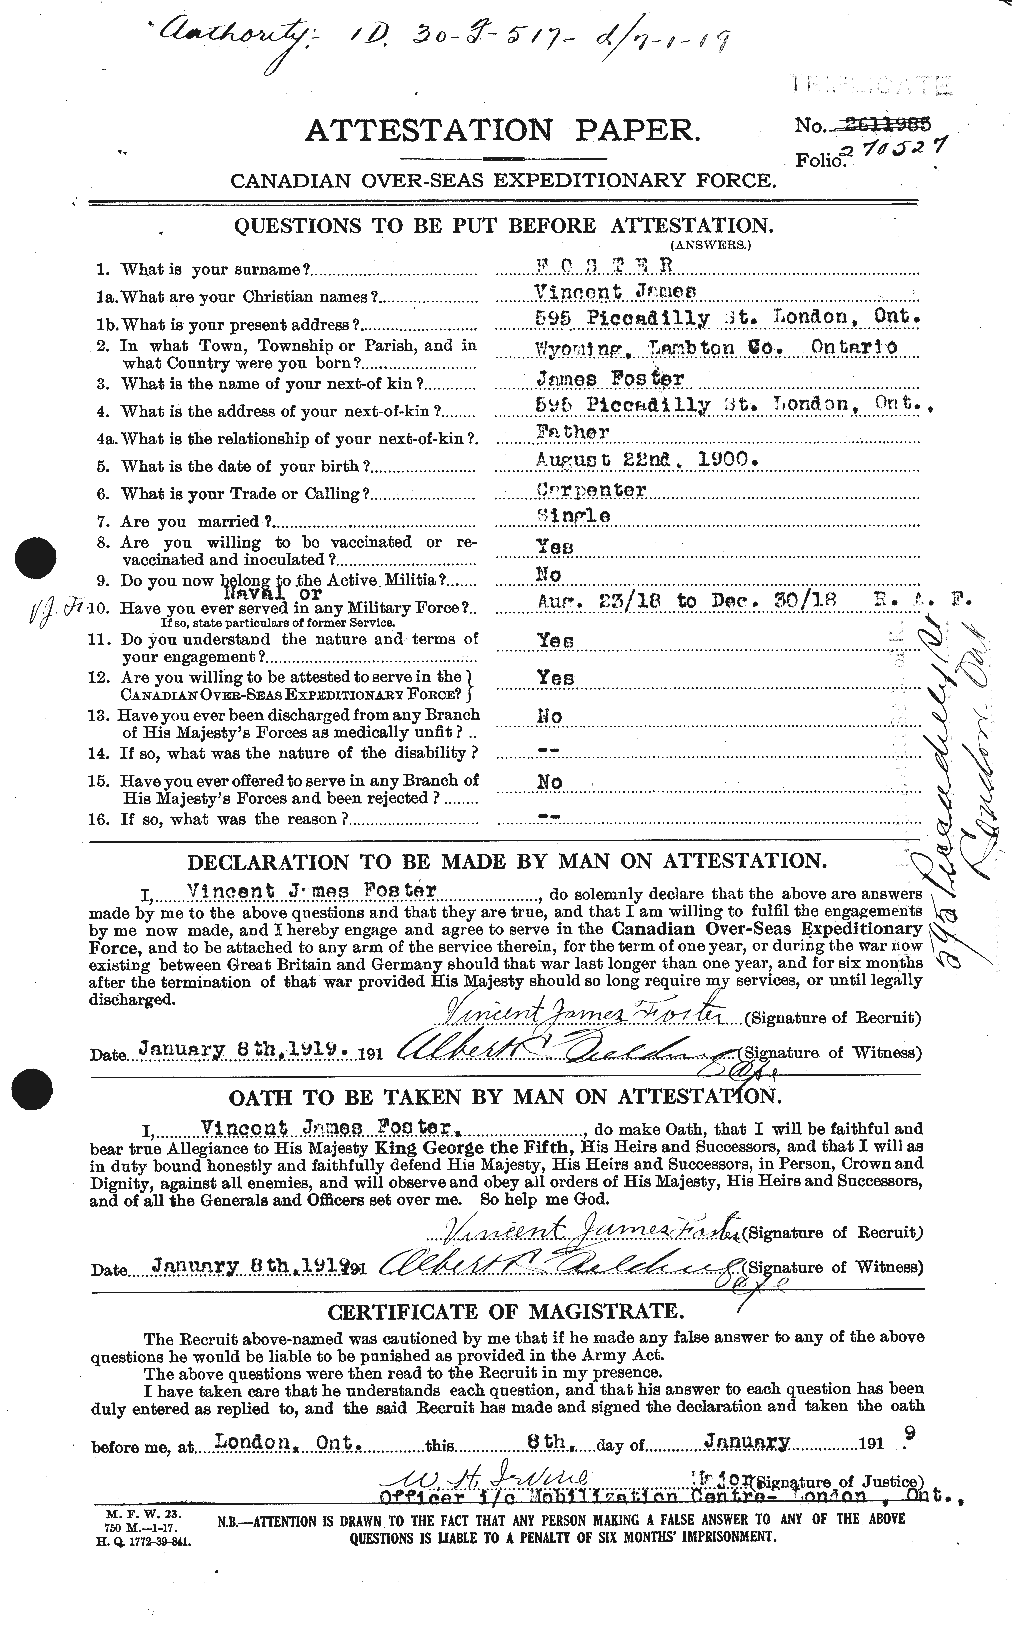 Dossiers du Personnel de la Première Guerre mondiale - CEC 335249a